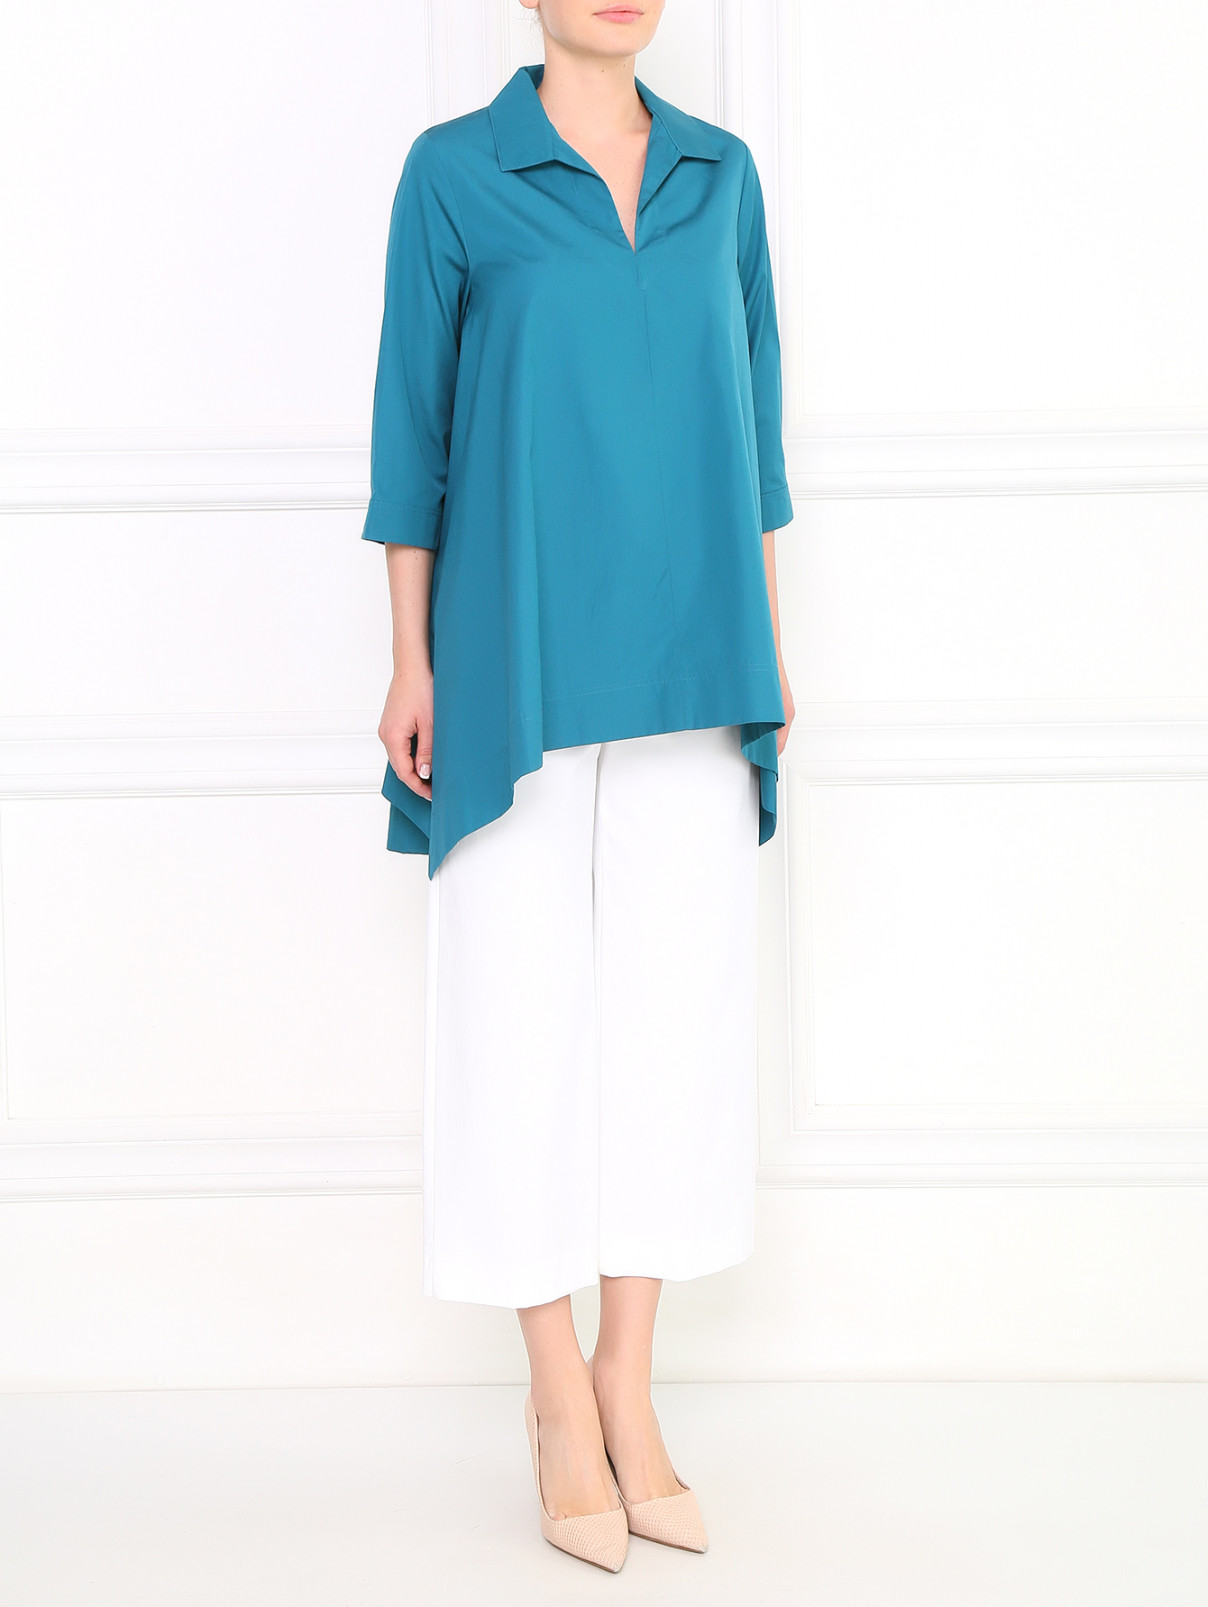 Удлиненная блуза из хлопка Max Mara  –  Модель Общий вид  – Цвет:  Зеленый